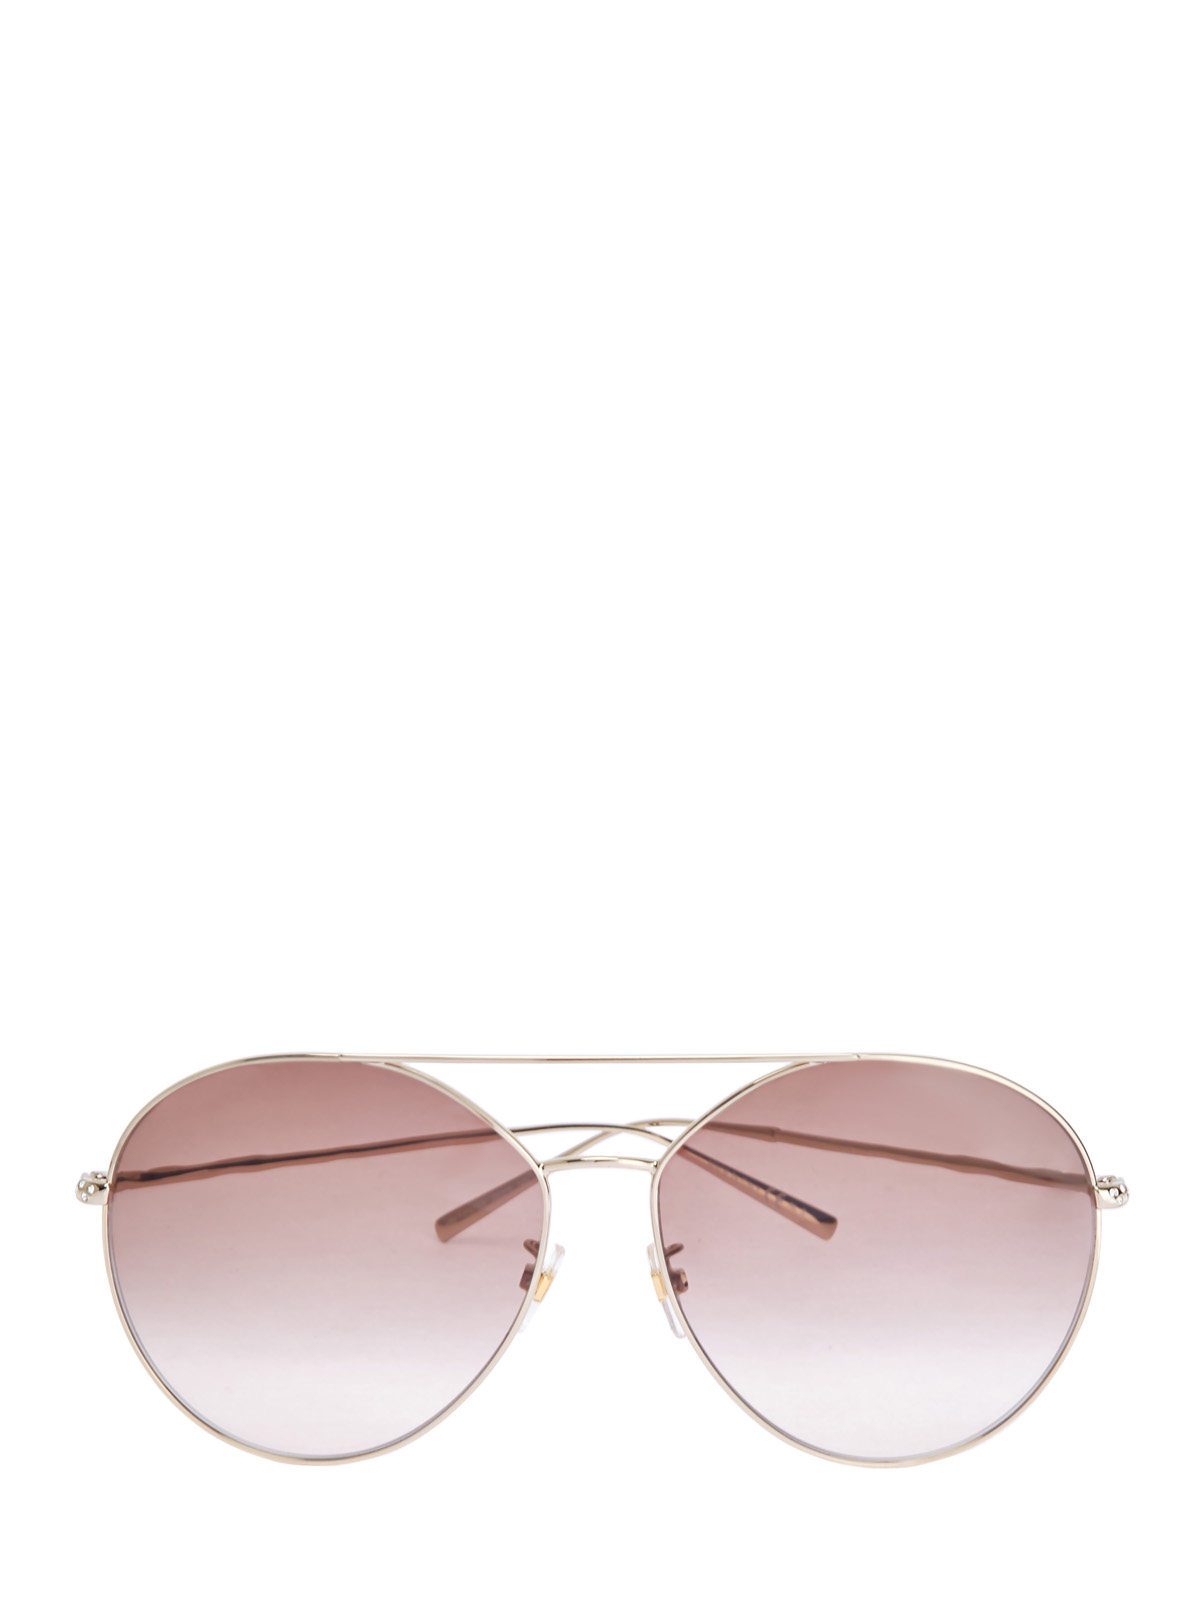 Очки-авиаторы в тонкой оправе с отделкой стразами GIVENCHY (sunglasses), цвет розовый, размер S;M;L